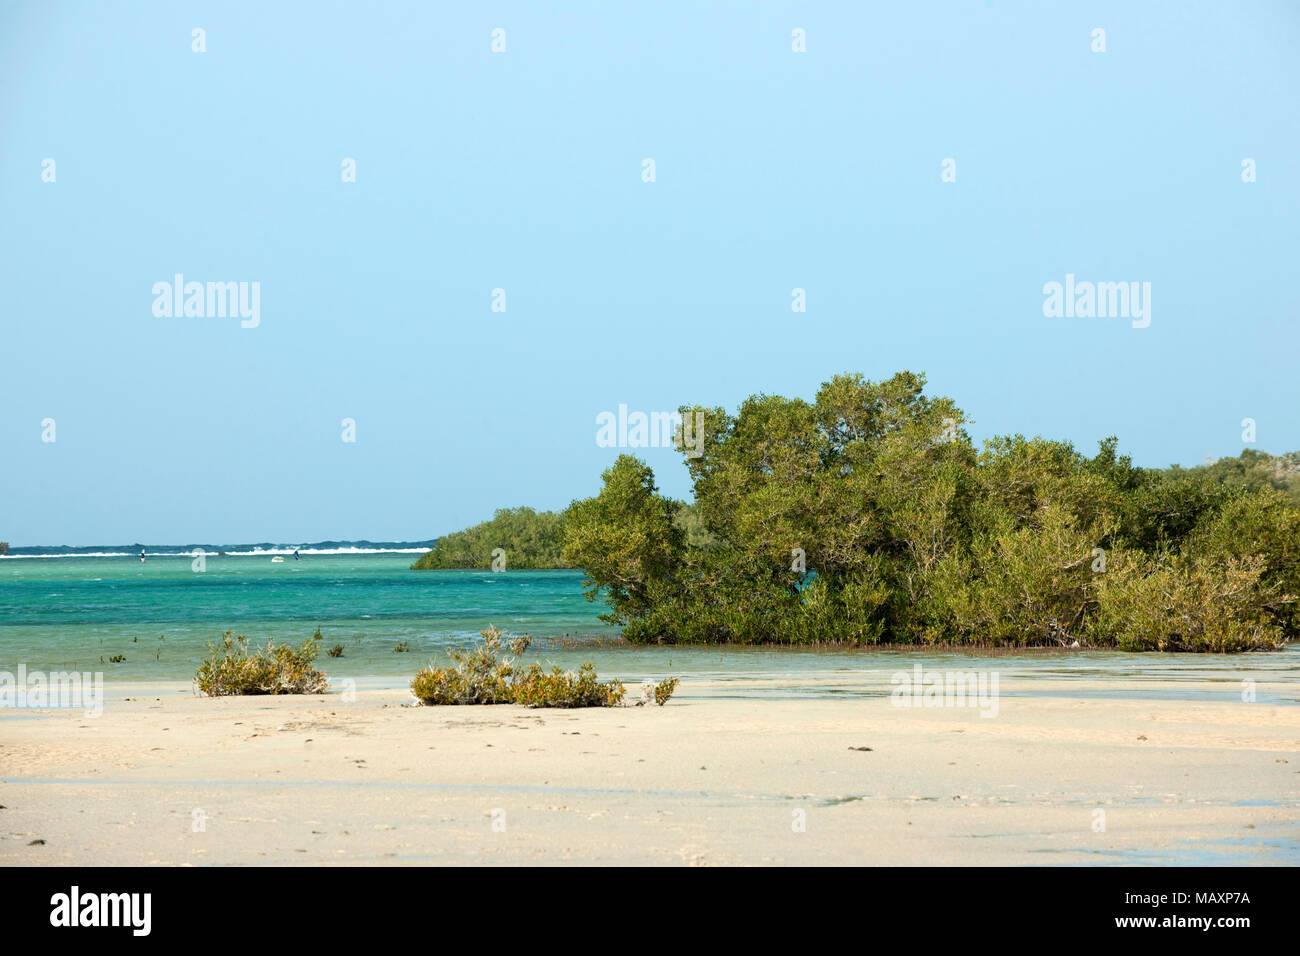 Egypt, Sinai, Sharm El Sheikh, Nabq National Reserve, Mangrove Forest Stock Photo